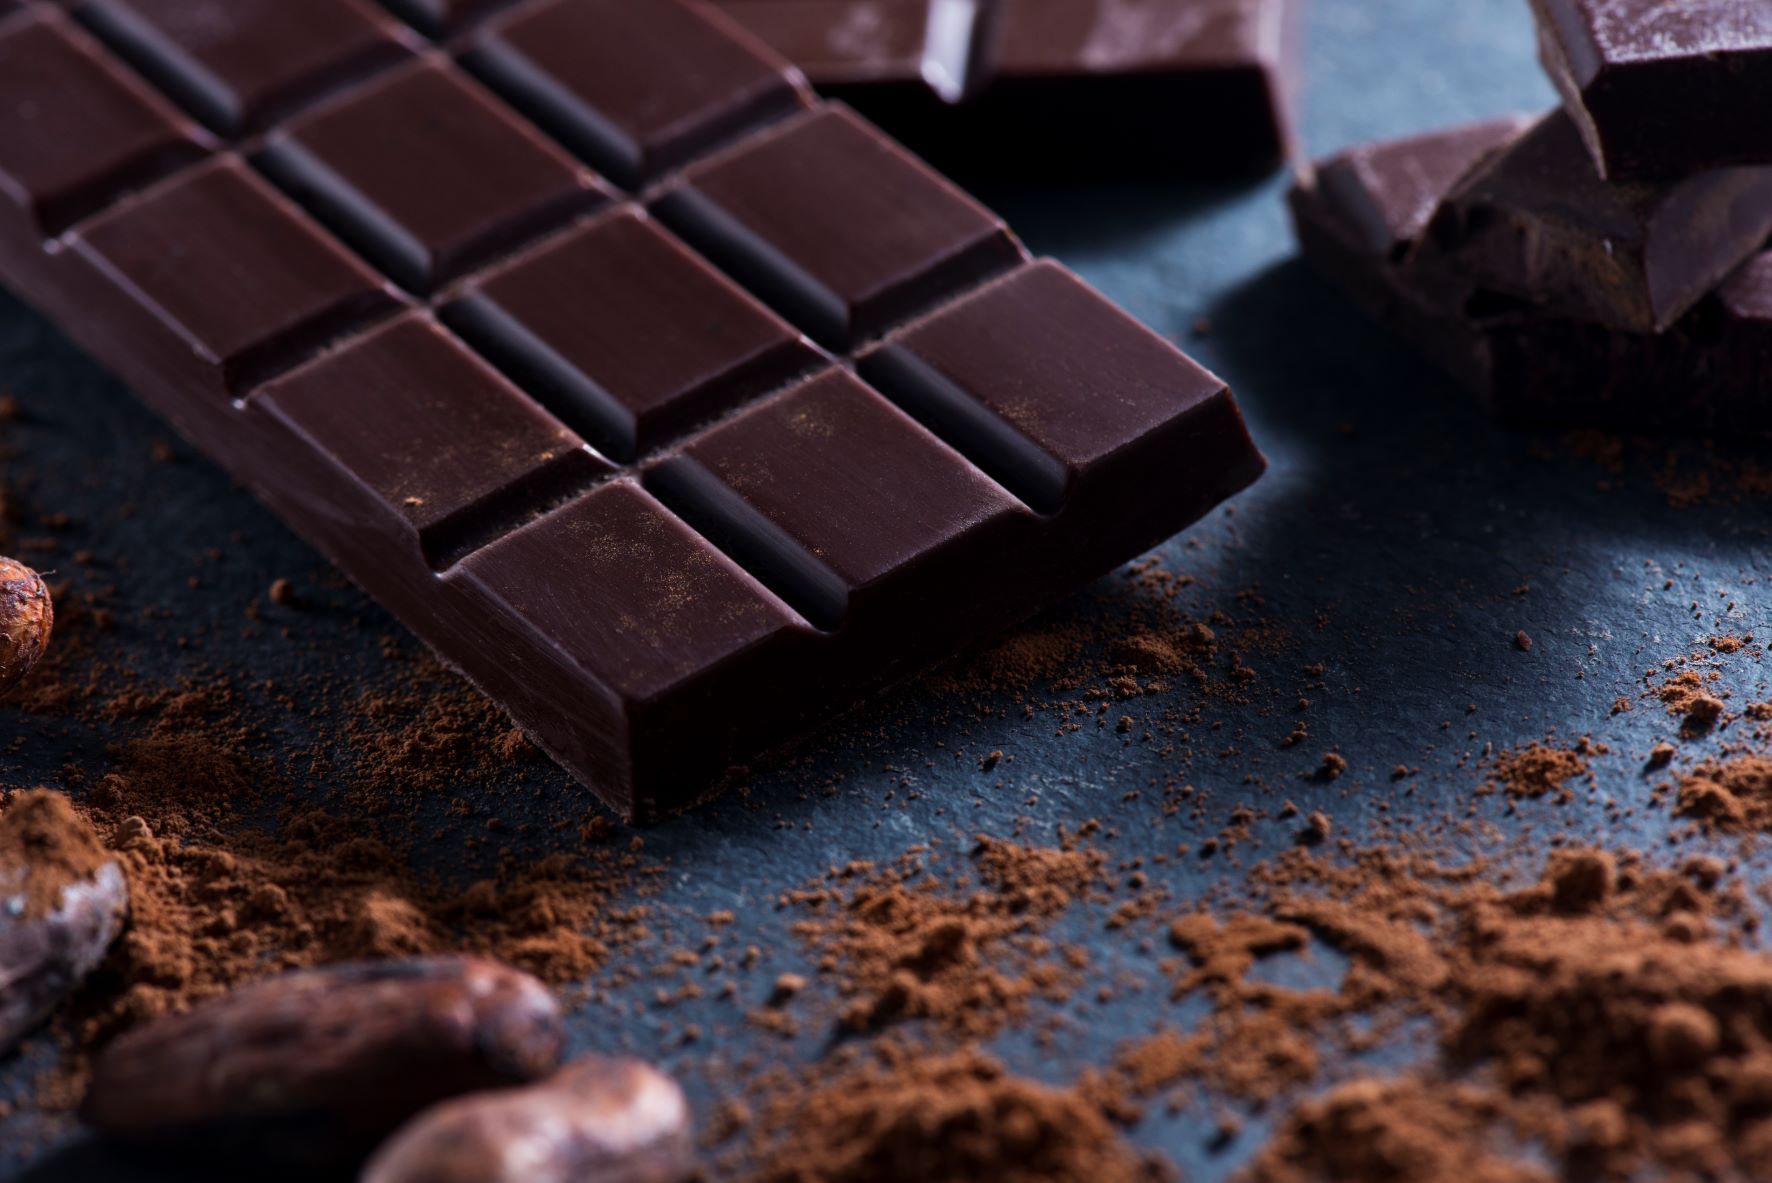 Pacari recuerda los beneficios de un buen cacao 